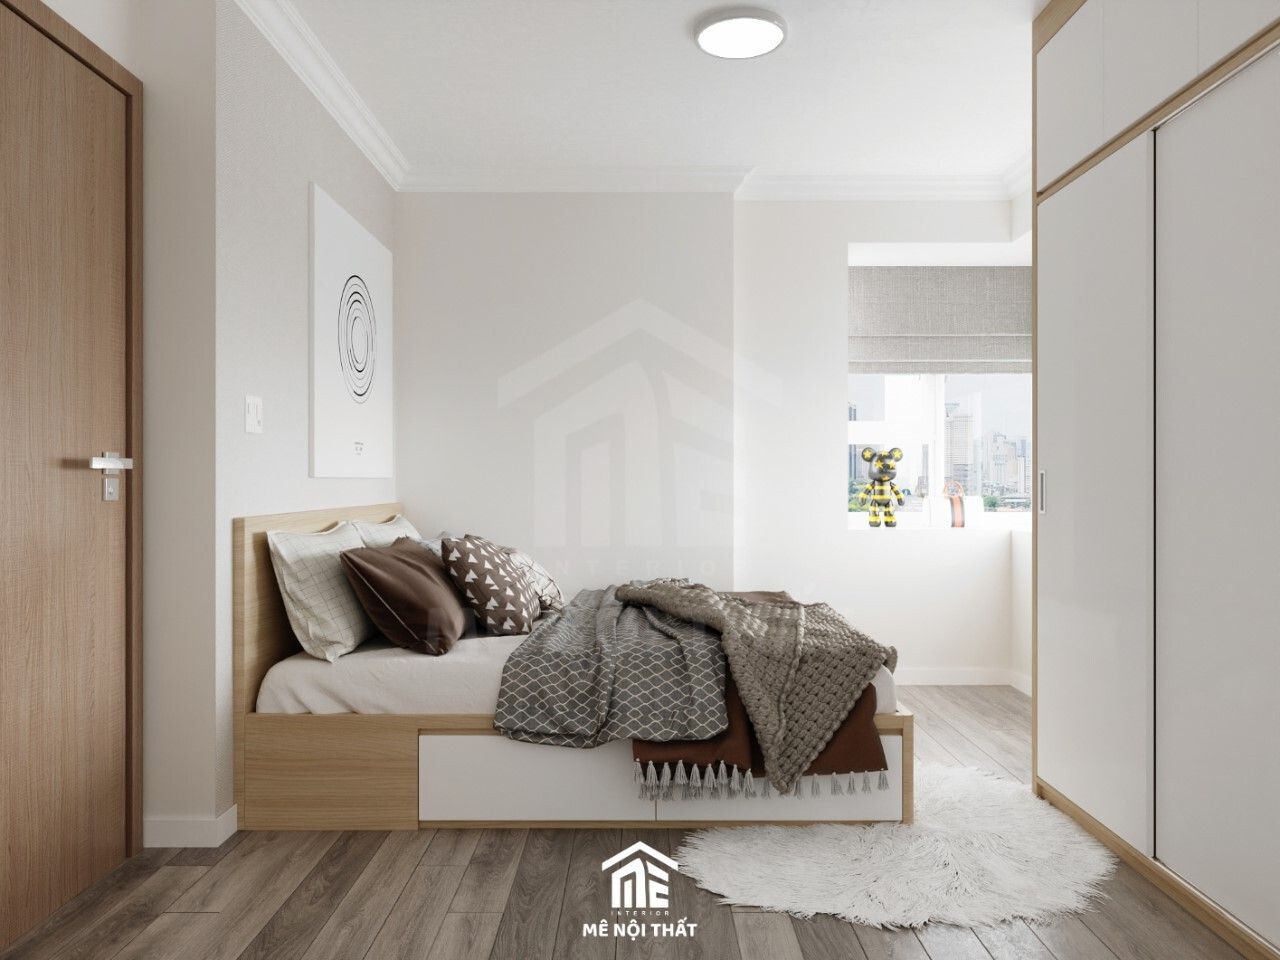 Giường ngủ dạng bục tiện lợi, tối ưu diện tích sử dụng cho căn hộ